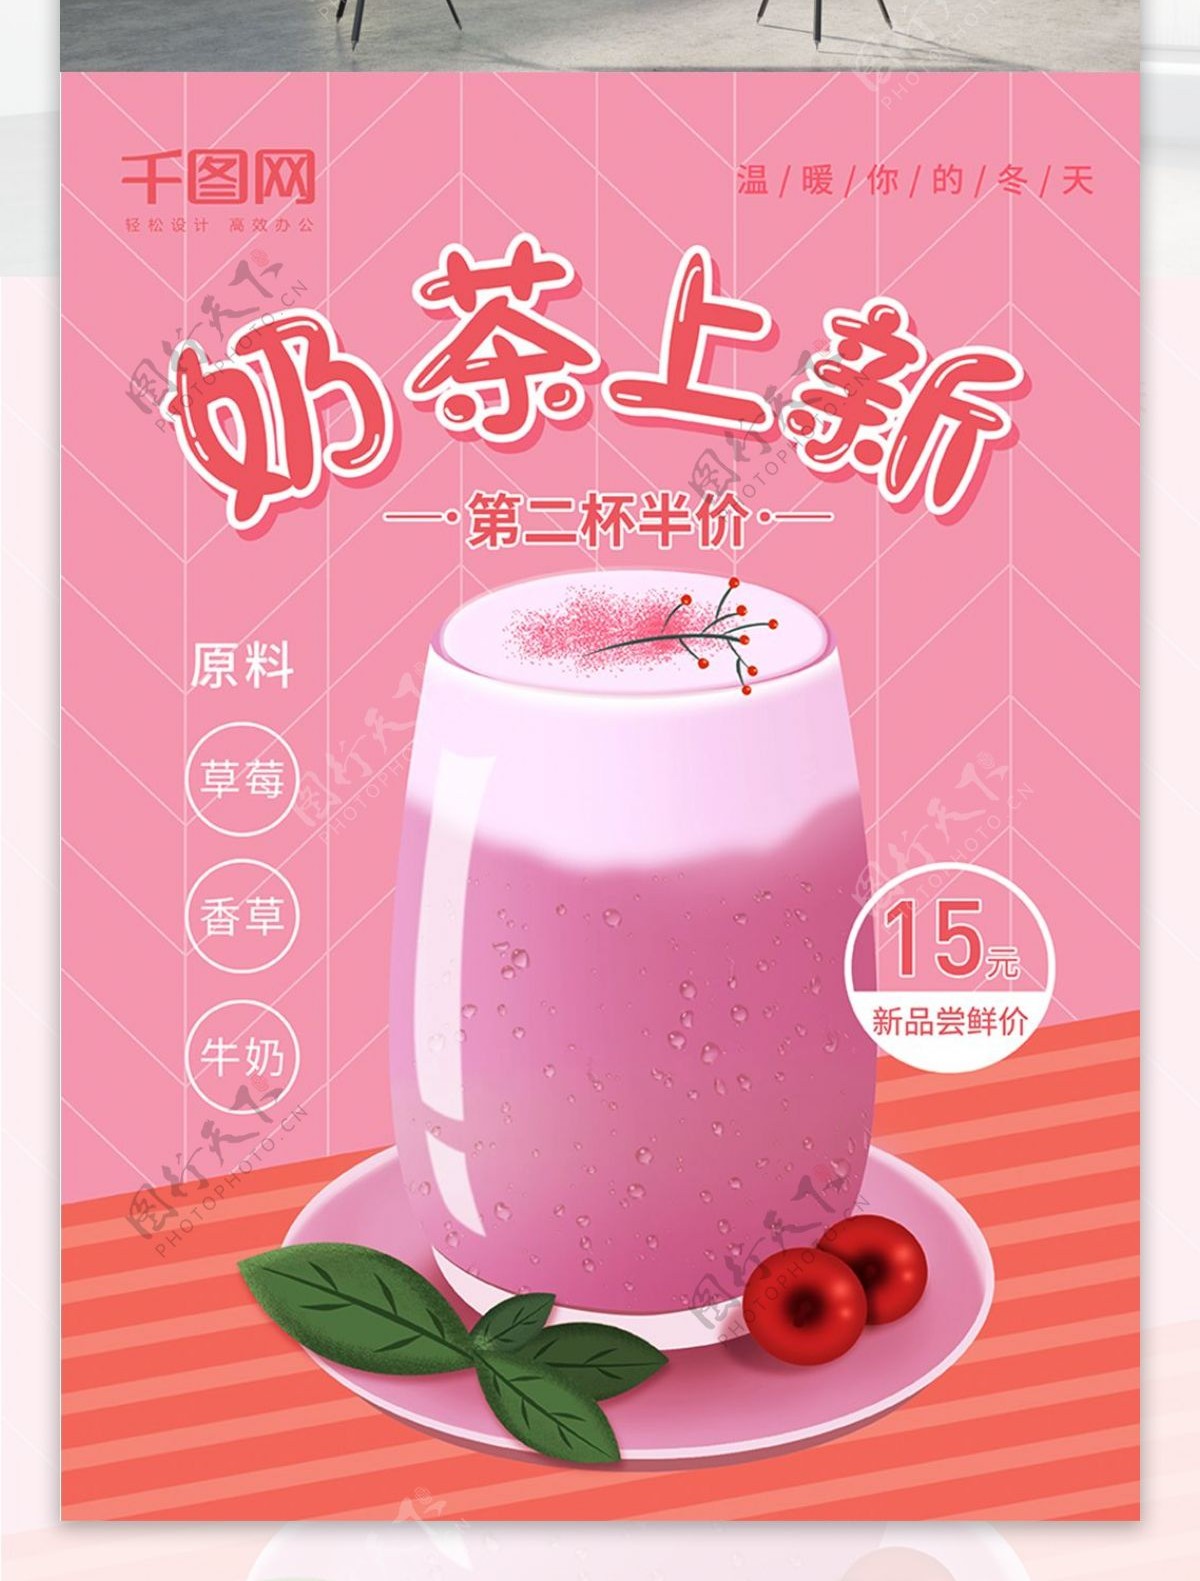 原创奶茶插画宣传海报